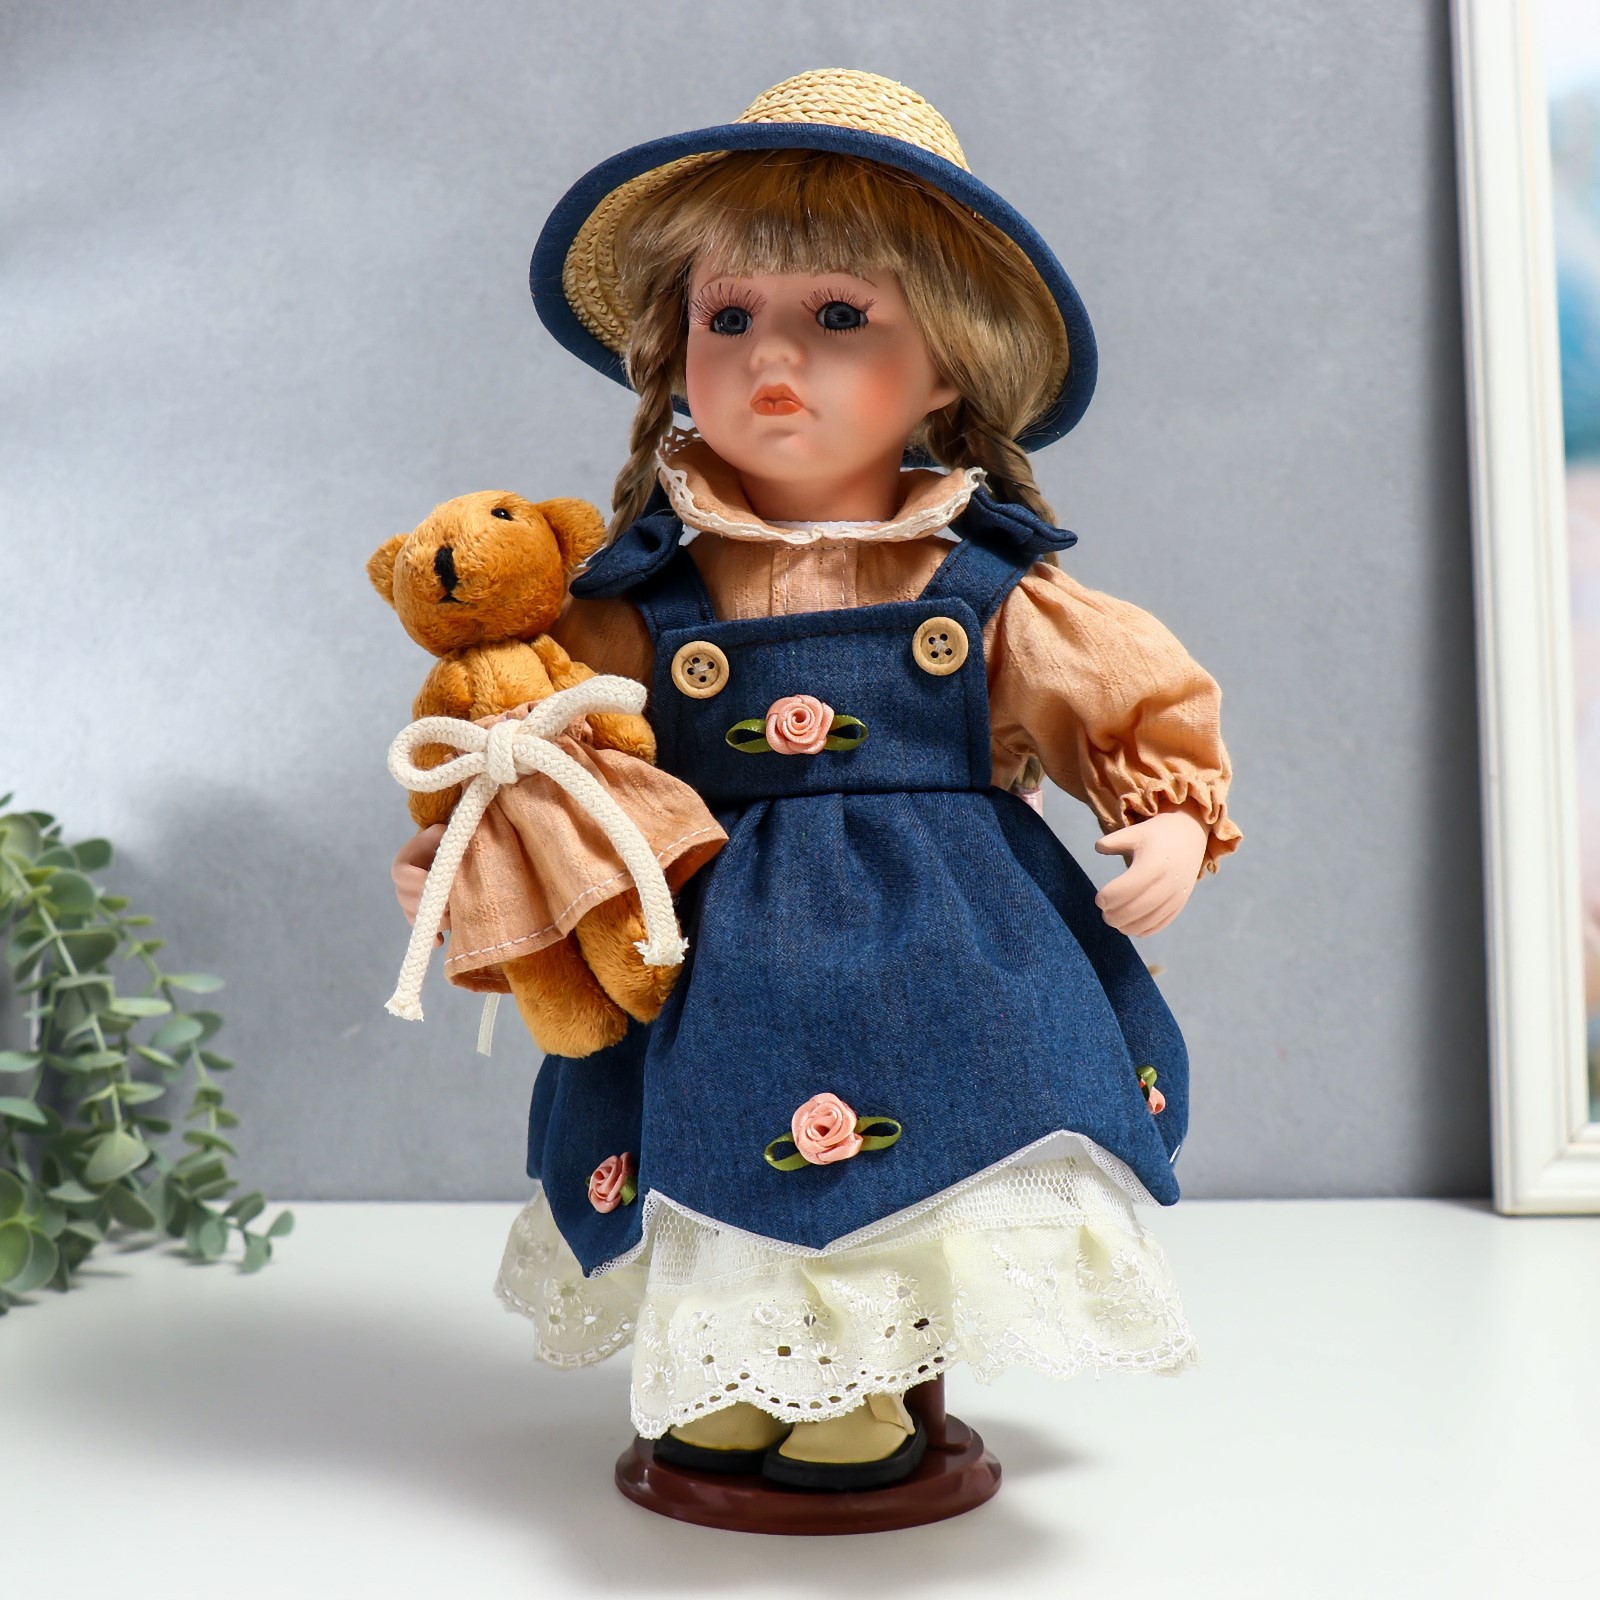 Кукла коллекционная Зимнее волшебство керамика «Сьюзи в джинсовом платье шляпке и с мишкой» 30 см - фото 1